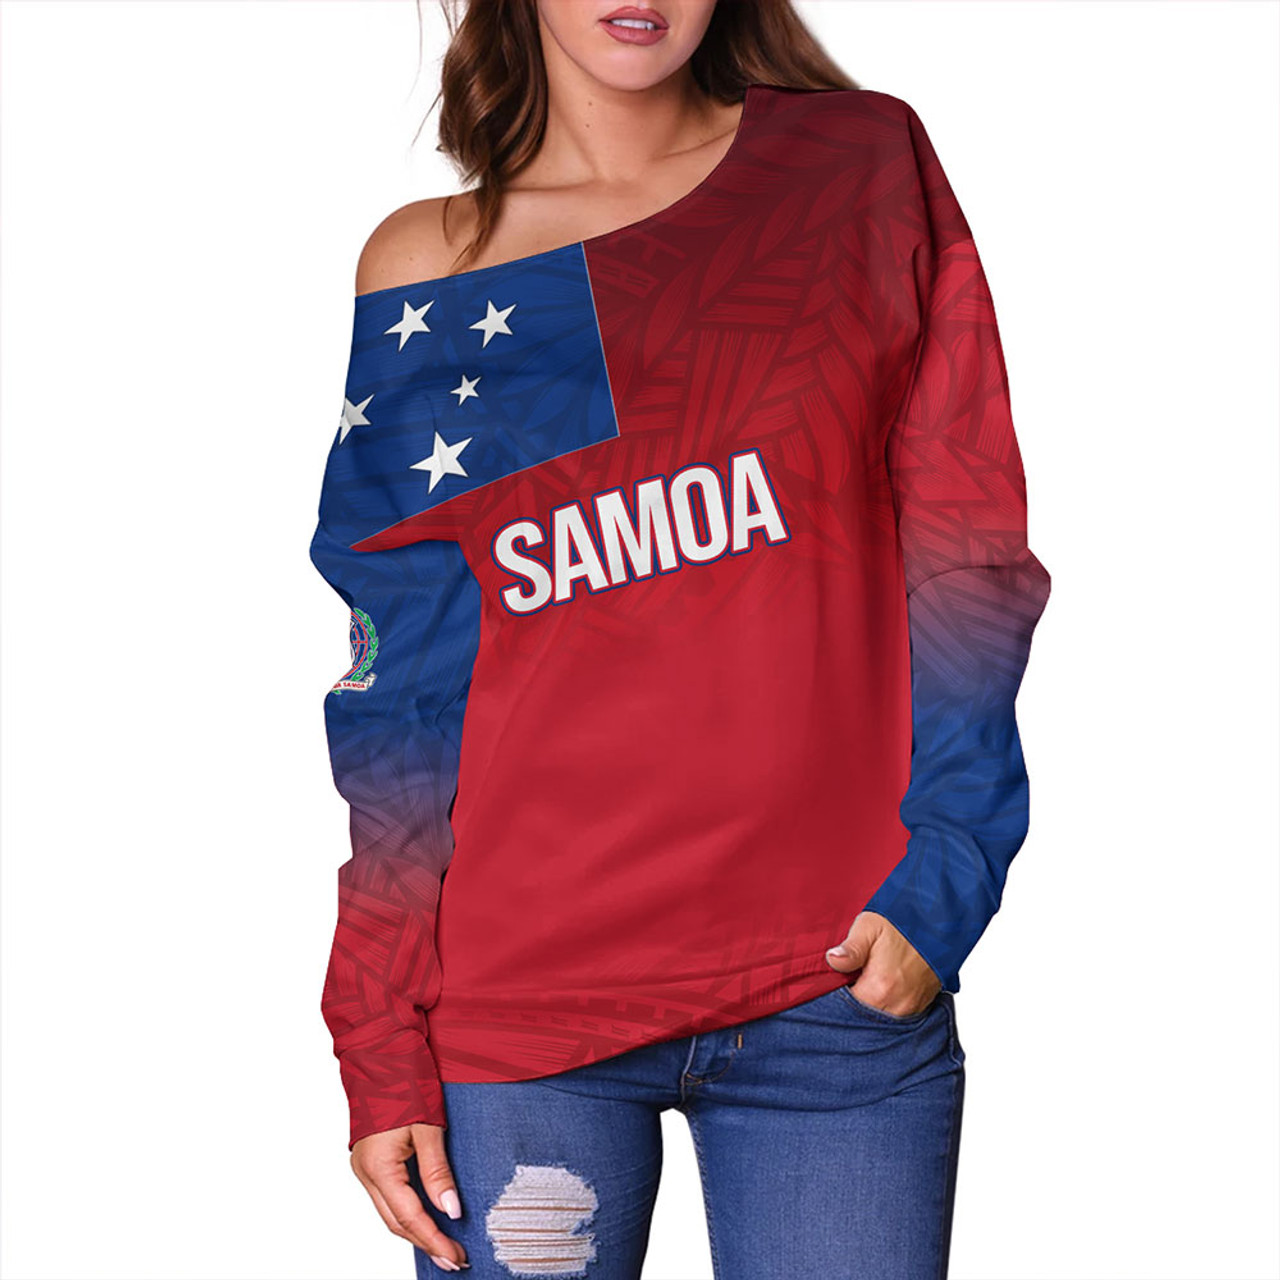 Samoa Off Shoulder Sweatshirt - Samoa Flag Color With Traditional Patterns